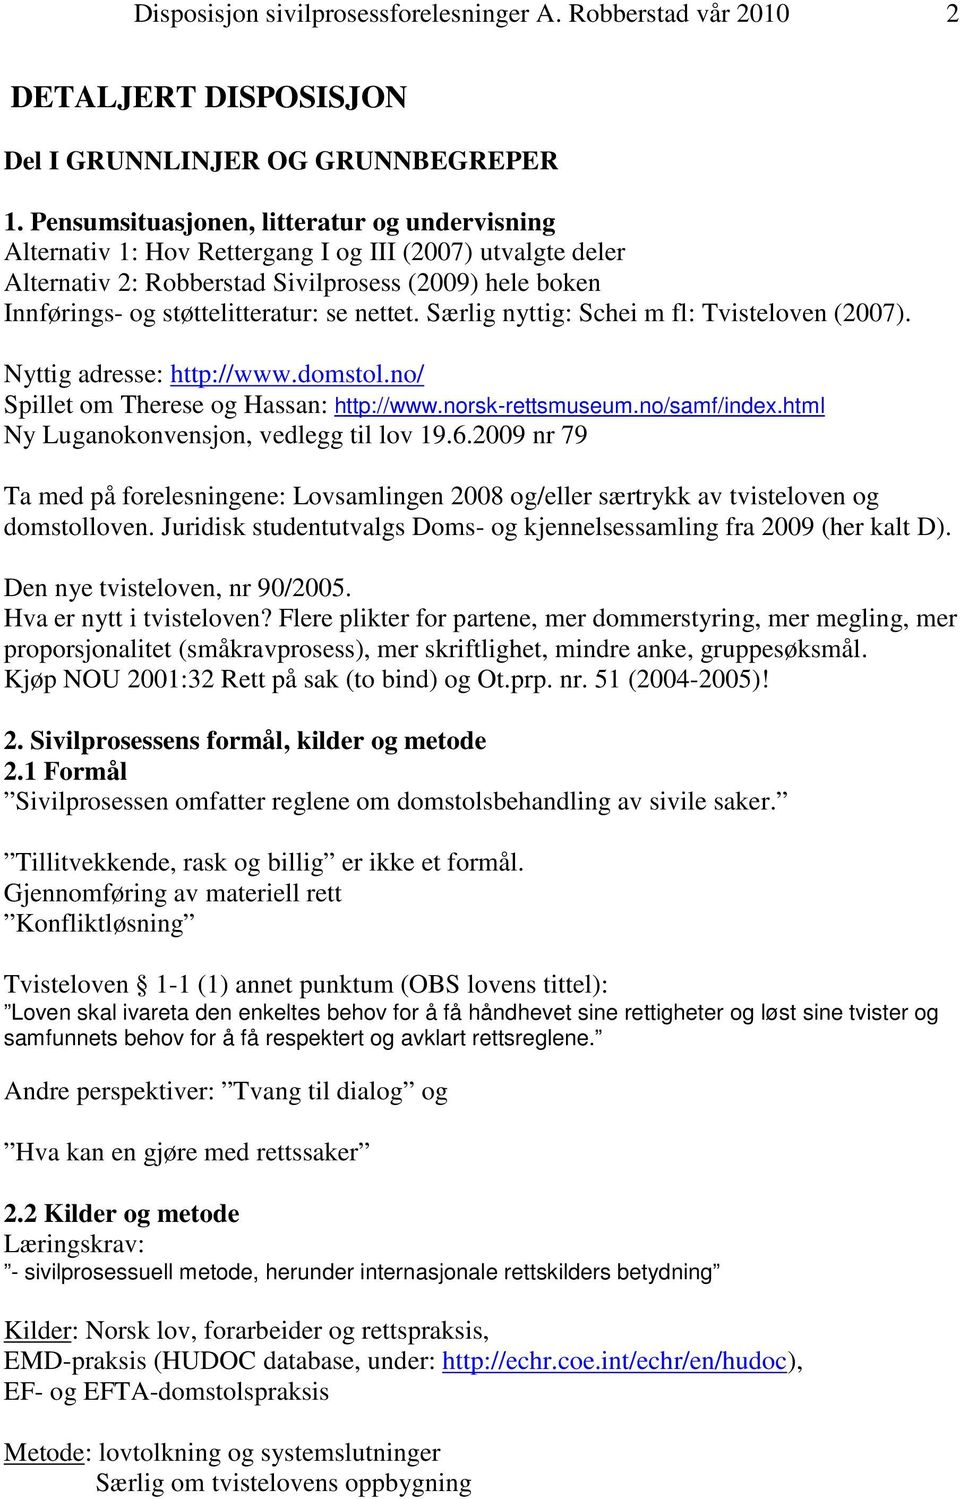 nettet. Særlig nyttig: Schei m fl: Tvisteloven (2007). Nyttig adresse: http://www.domstol.no/ Spillet om Therese og Hassan: http://www.norsk-rettsmuseum.no/samf/index.